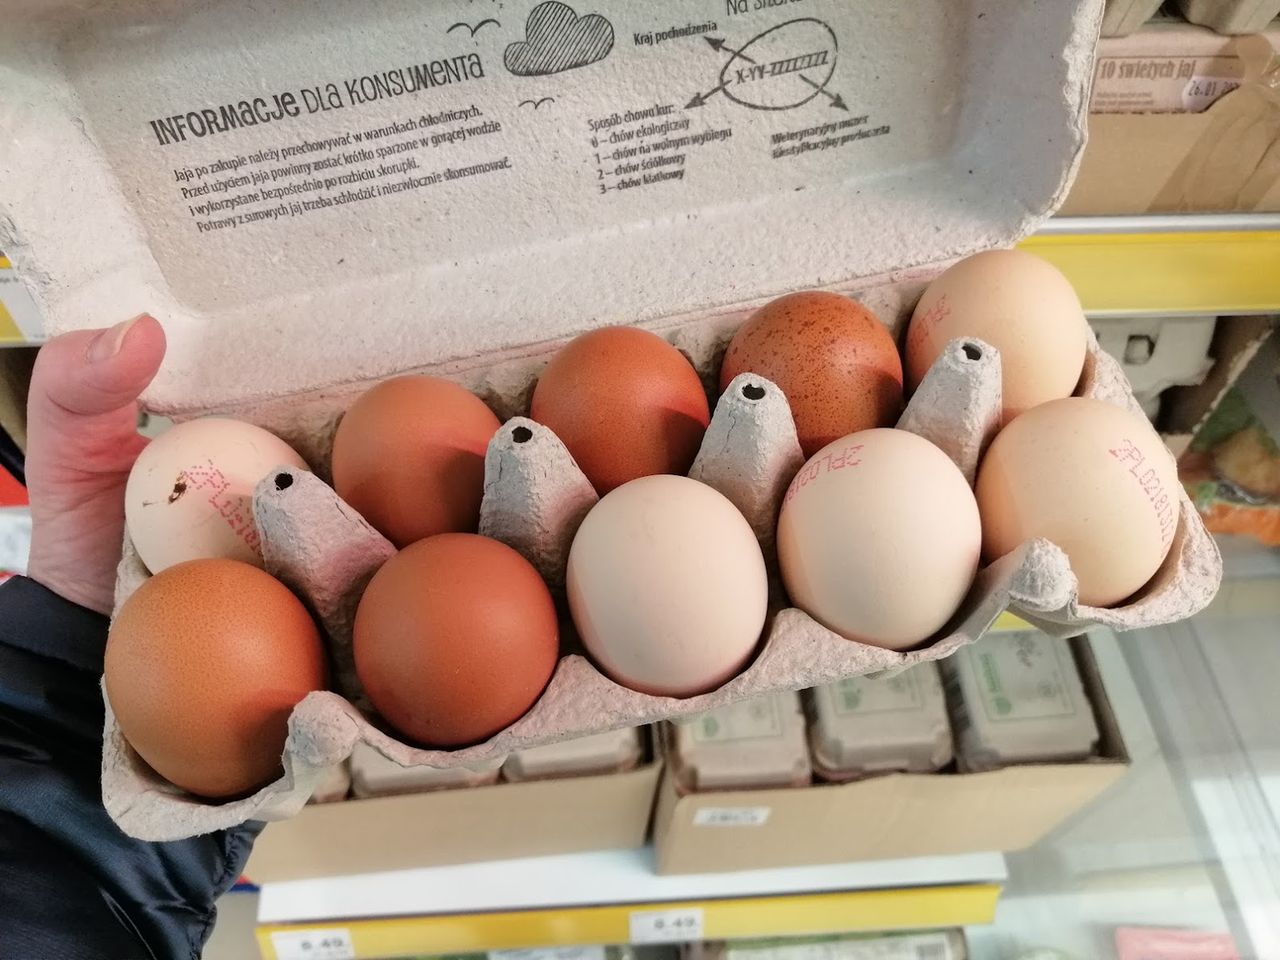 jak sprawdzić czy jajka są świeże fot. genialne.pl